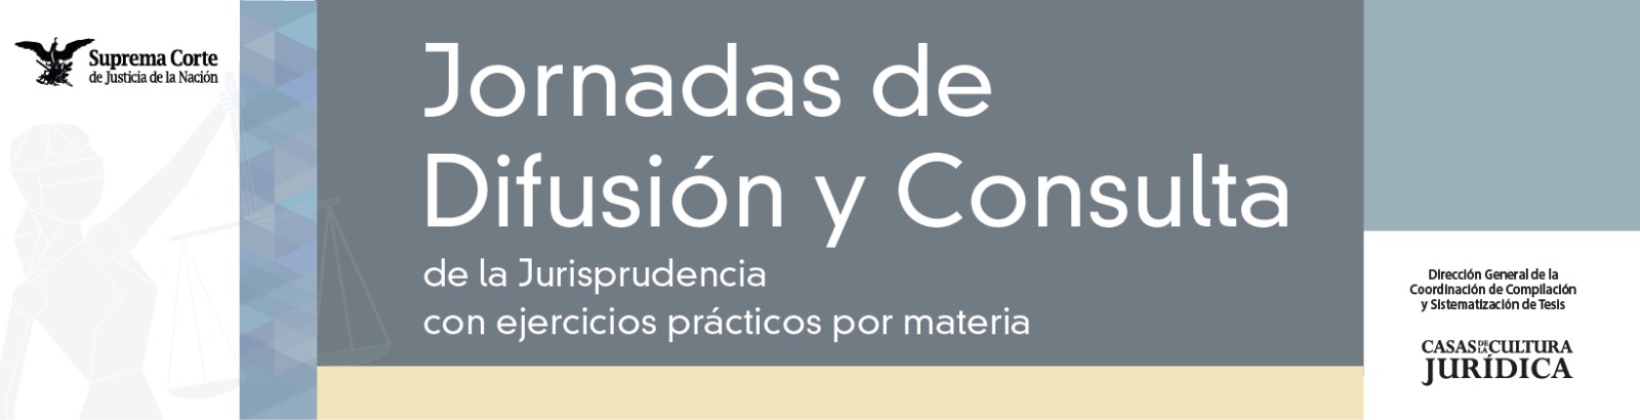 Banner de Jornadas de Difusión y Consulta de la Jurisprudencia con ejercicios prácticos por materia - Competencia Económica, Telecomunicaciones y Radiodifusión y Administrativa